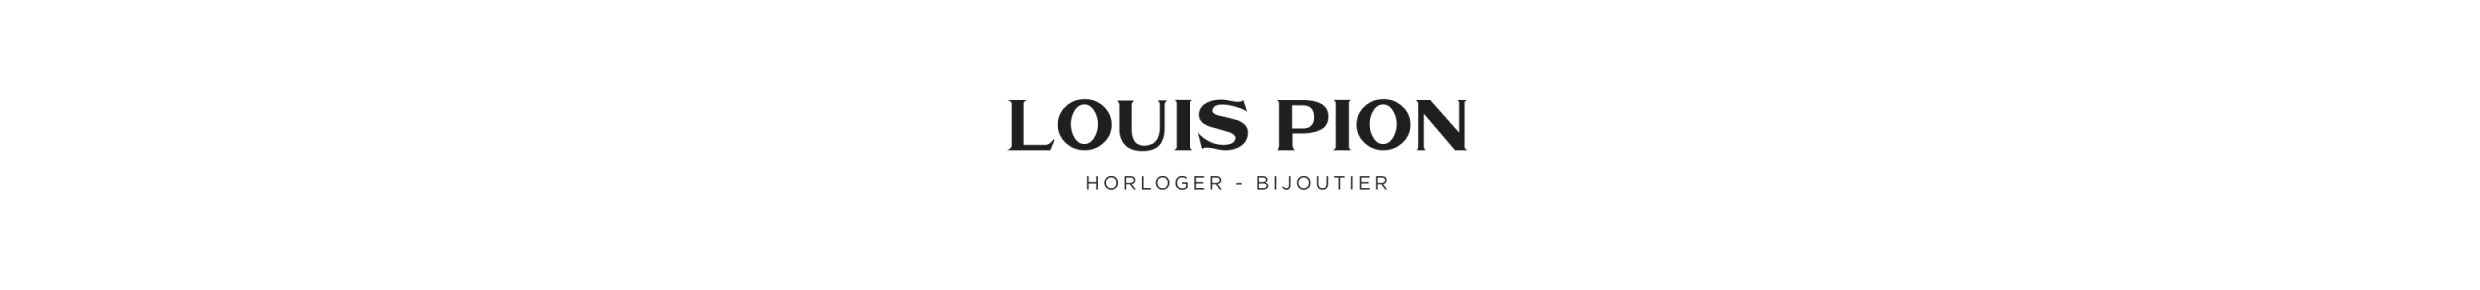 LOUIS PION logo